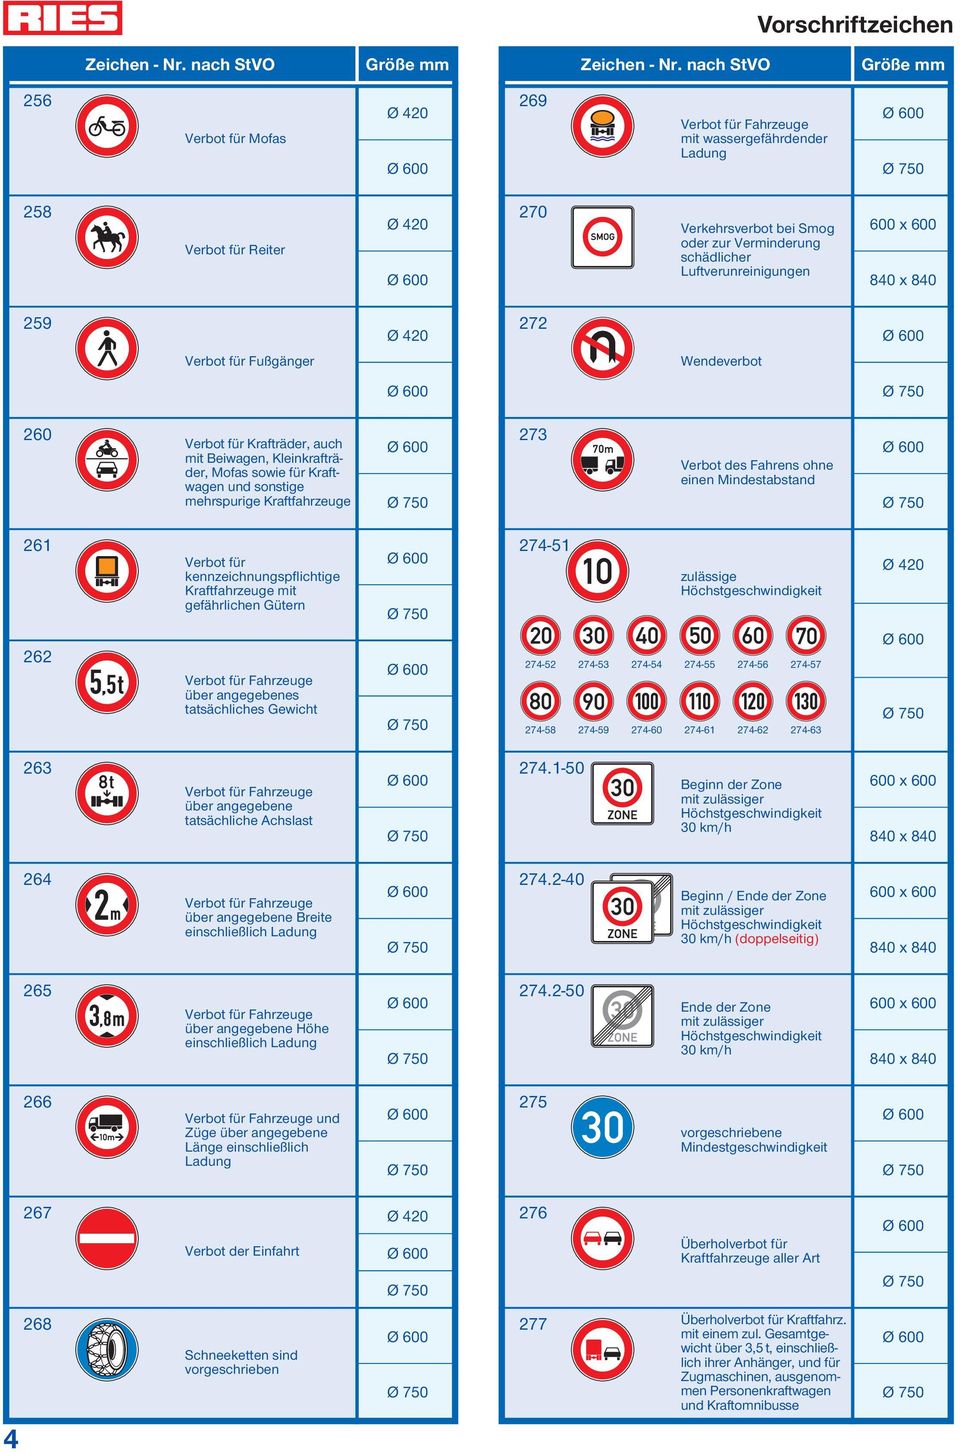 einen Mindestabstand 261 262 Verbot für kennzeichnungspflichtige Kraftfahrzeuge mit gefährlichen Gütern Verbot für Fahrzeuge über angegebenes tatsächliches Gewicht 274-51 zulässige